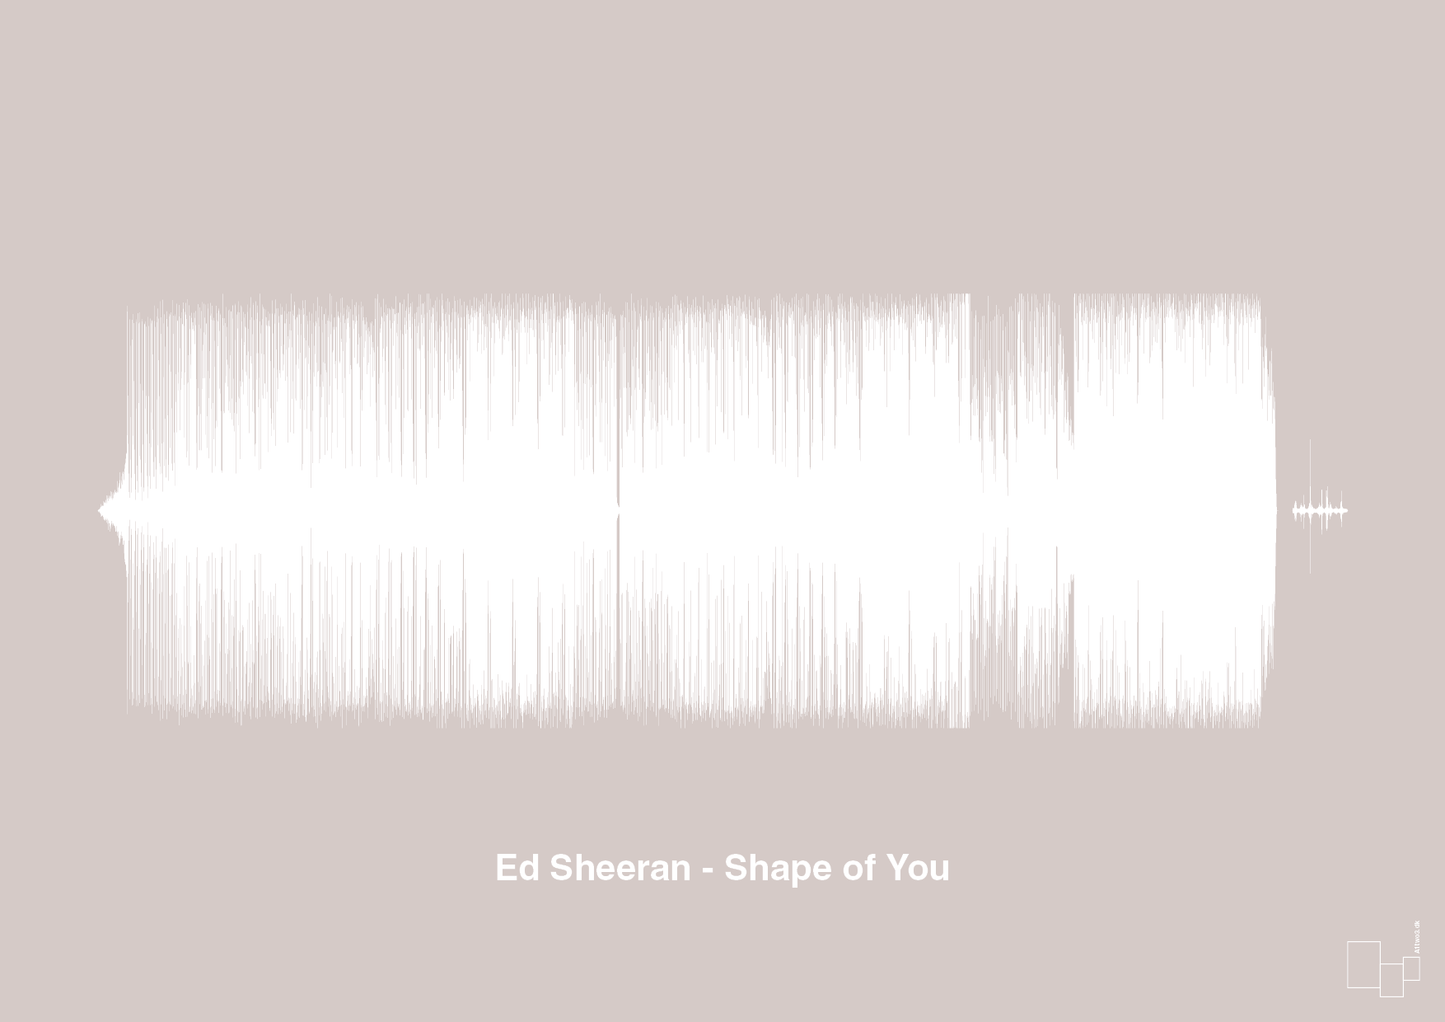 ed sheeran - shape of you - Plakat med Musik i Broken Beige